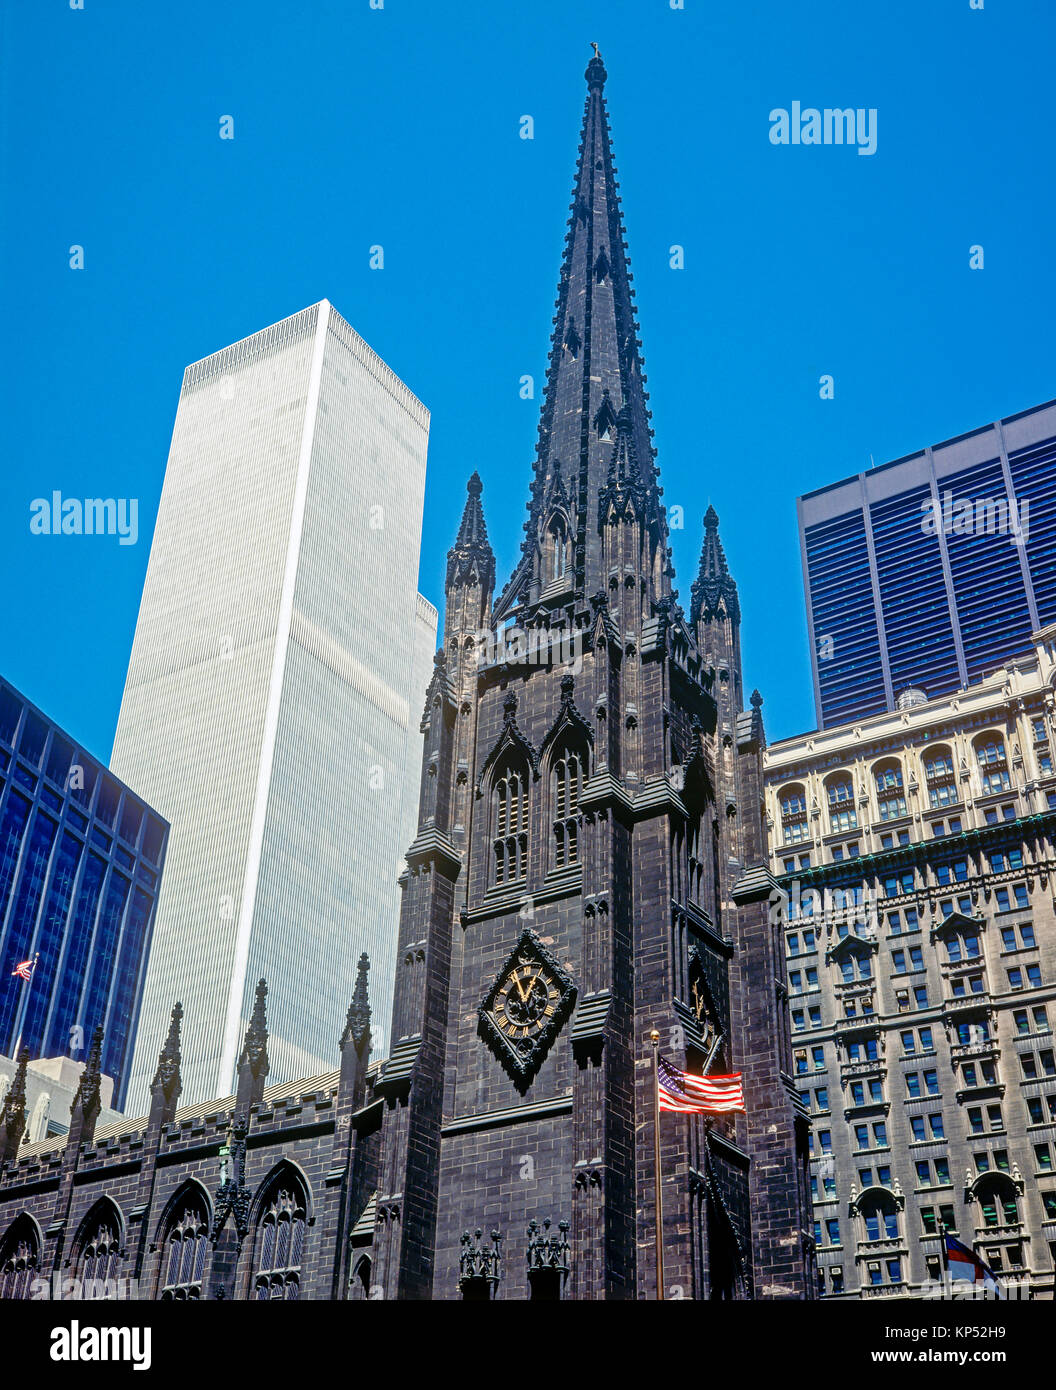 De mayo de 1982,Nueva York,la iglesia Trinity,World Trade Center,WTC torres gemelas,distrito financiero,Manhattan,Nueva York,NY,NY,USA, Foto de stock